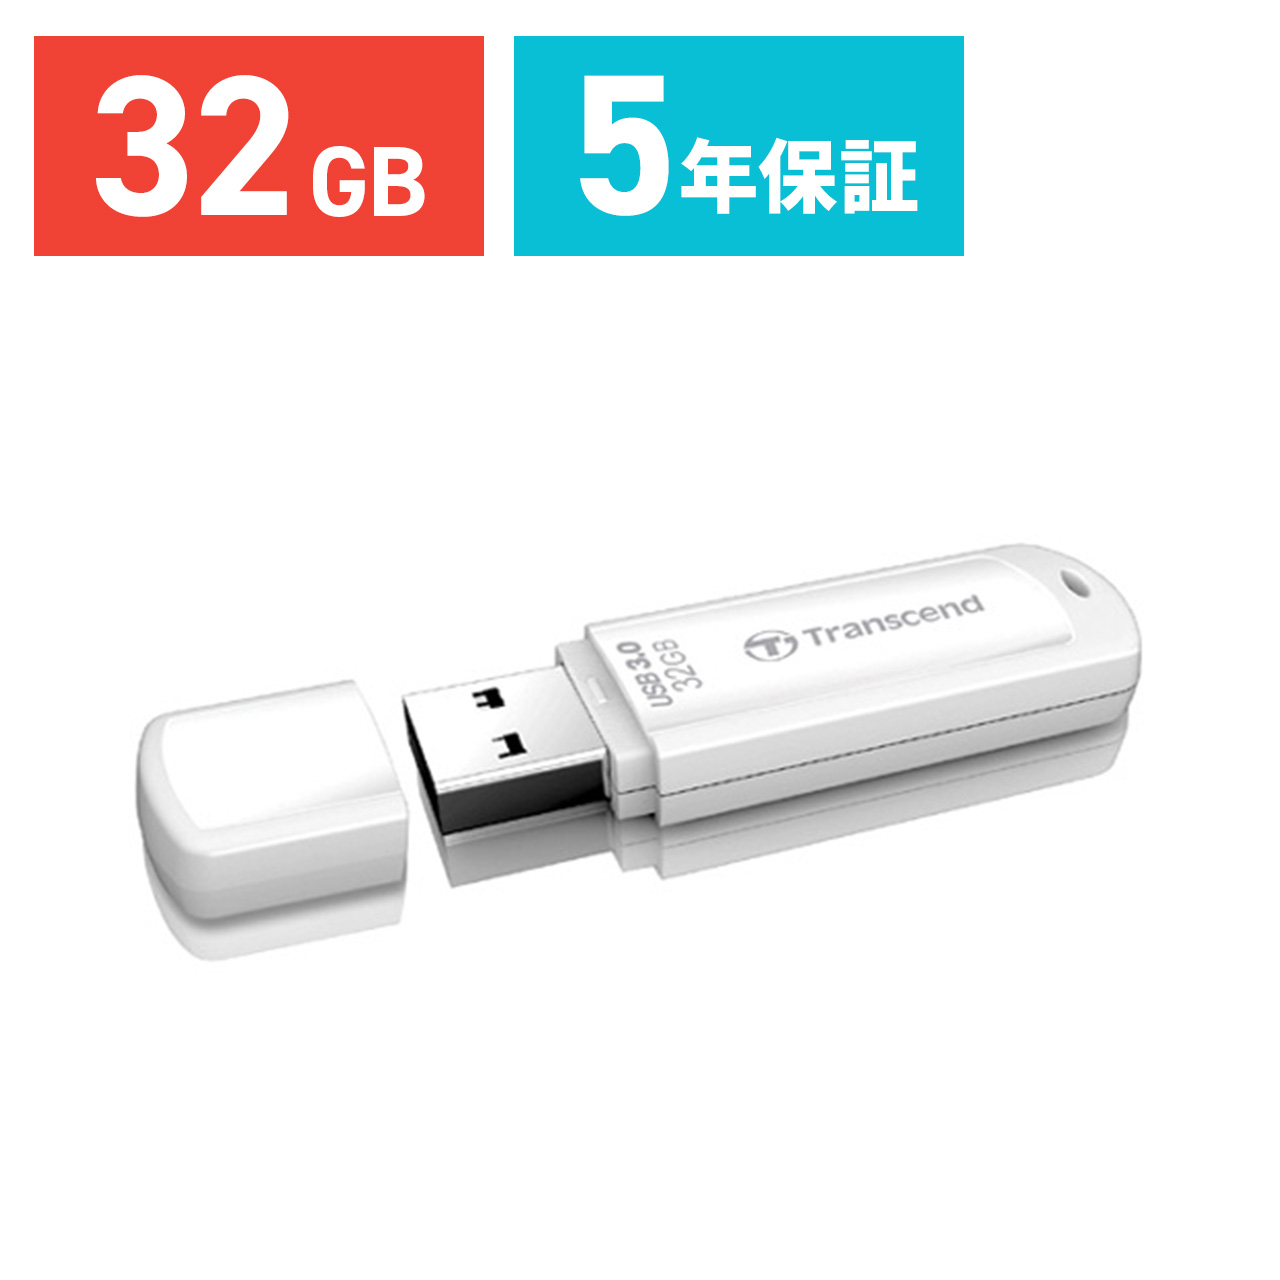 USBメモリ 32GB USB3.0 Transcend社製 TS32GJF730 5年保証